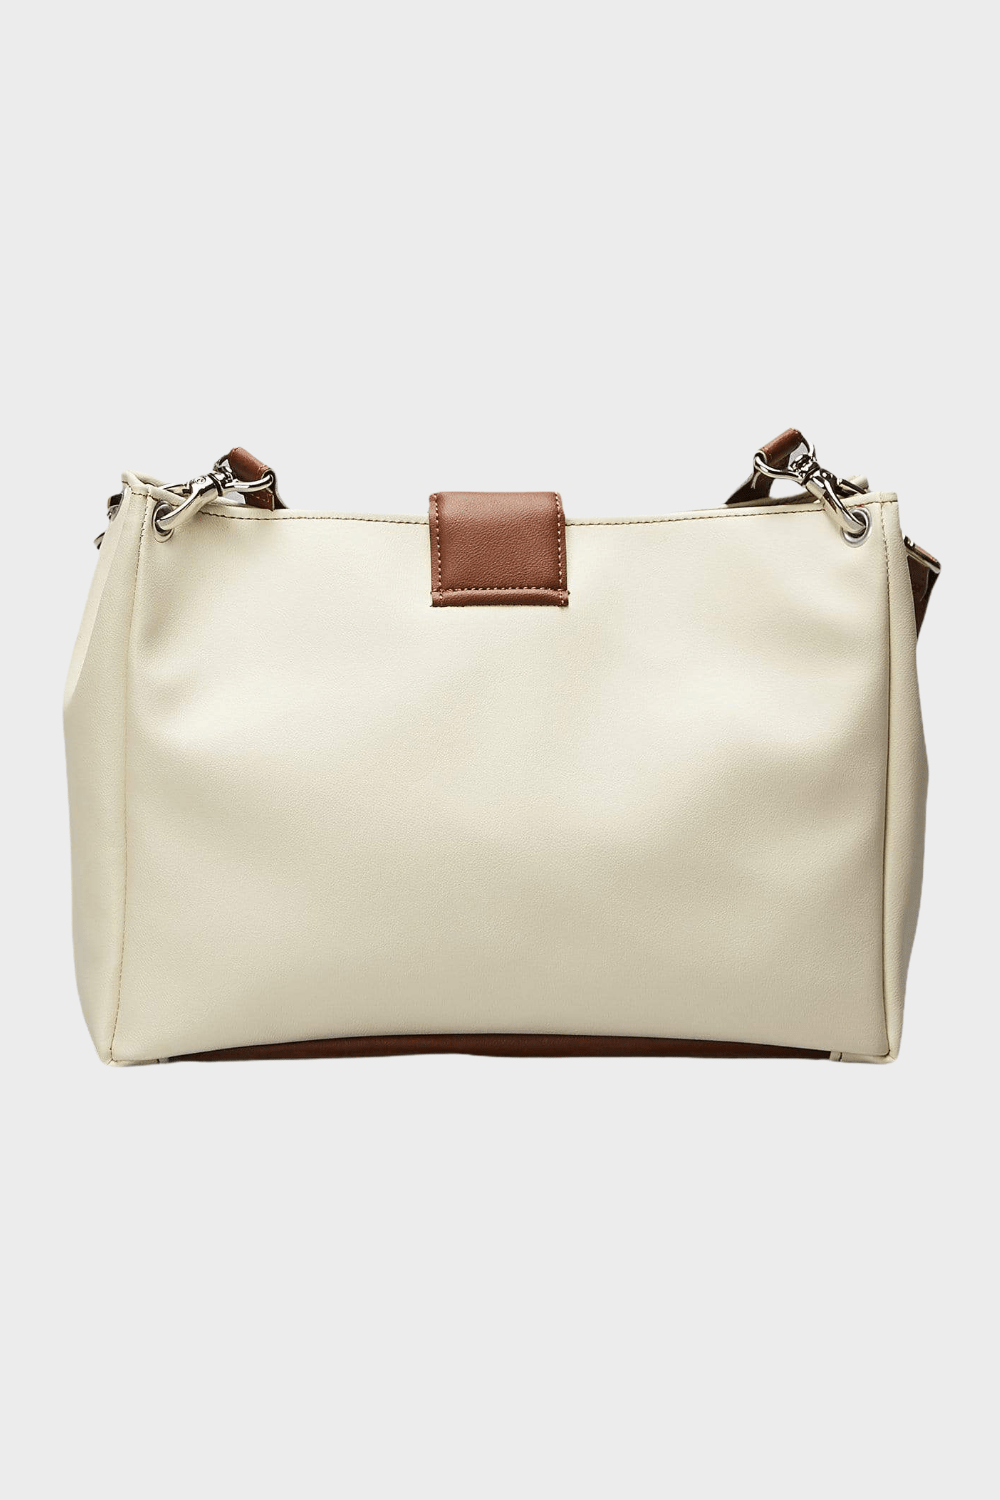 Marina Milani BAGS Parigina Crème Vegan Leather and Brown Shoulder Bag